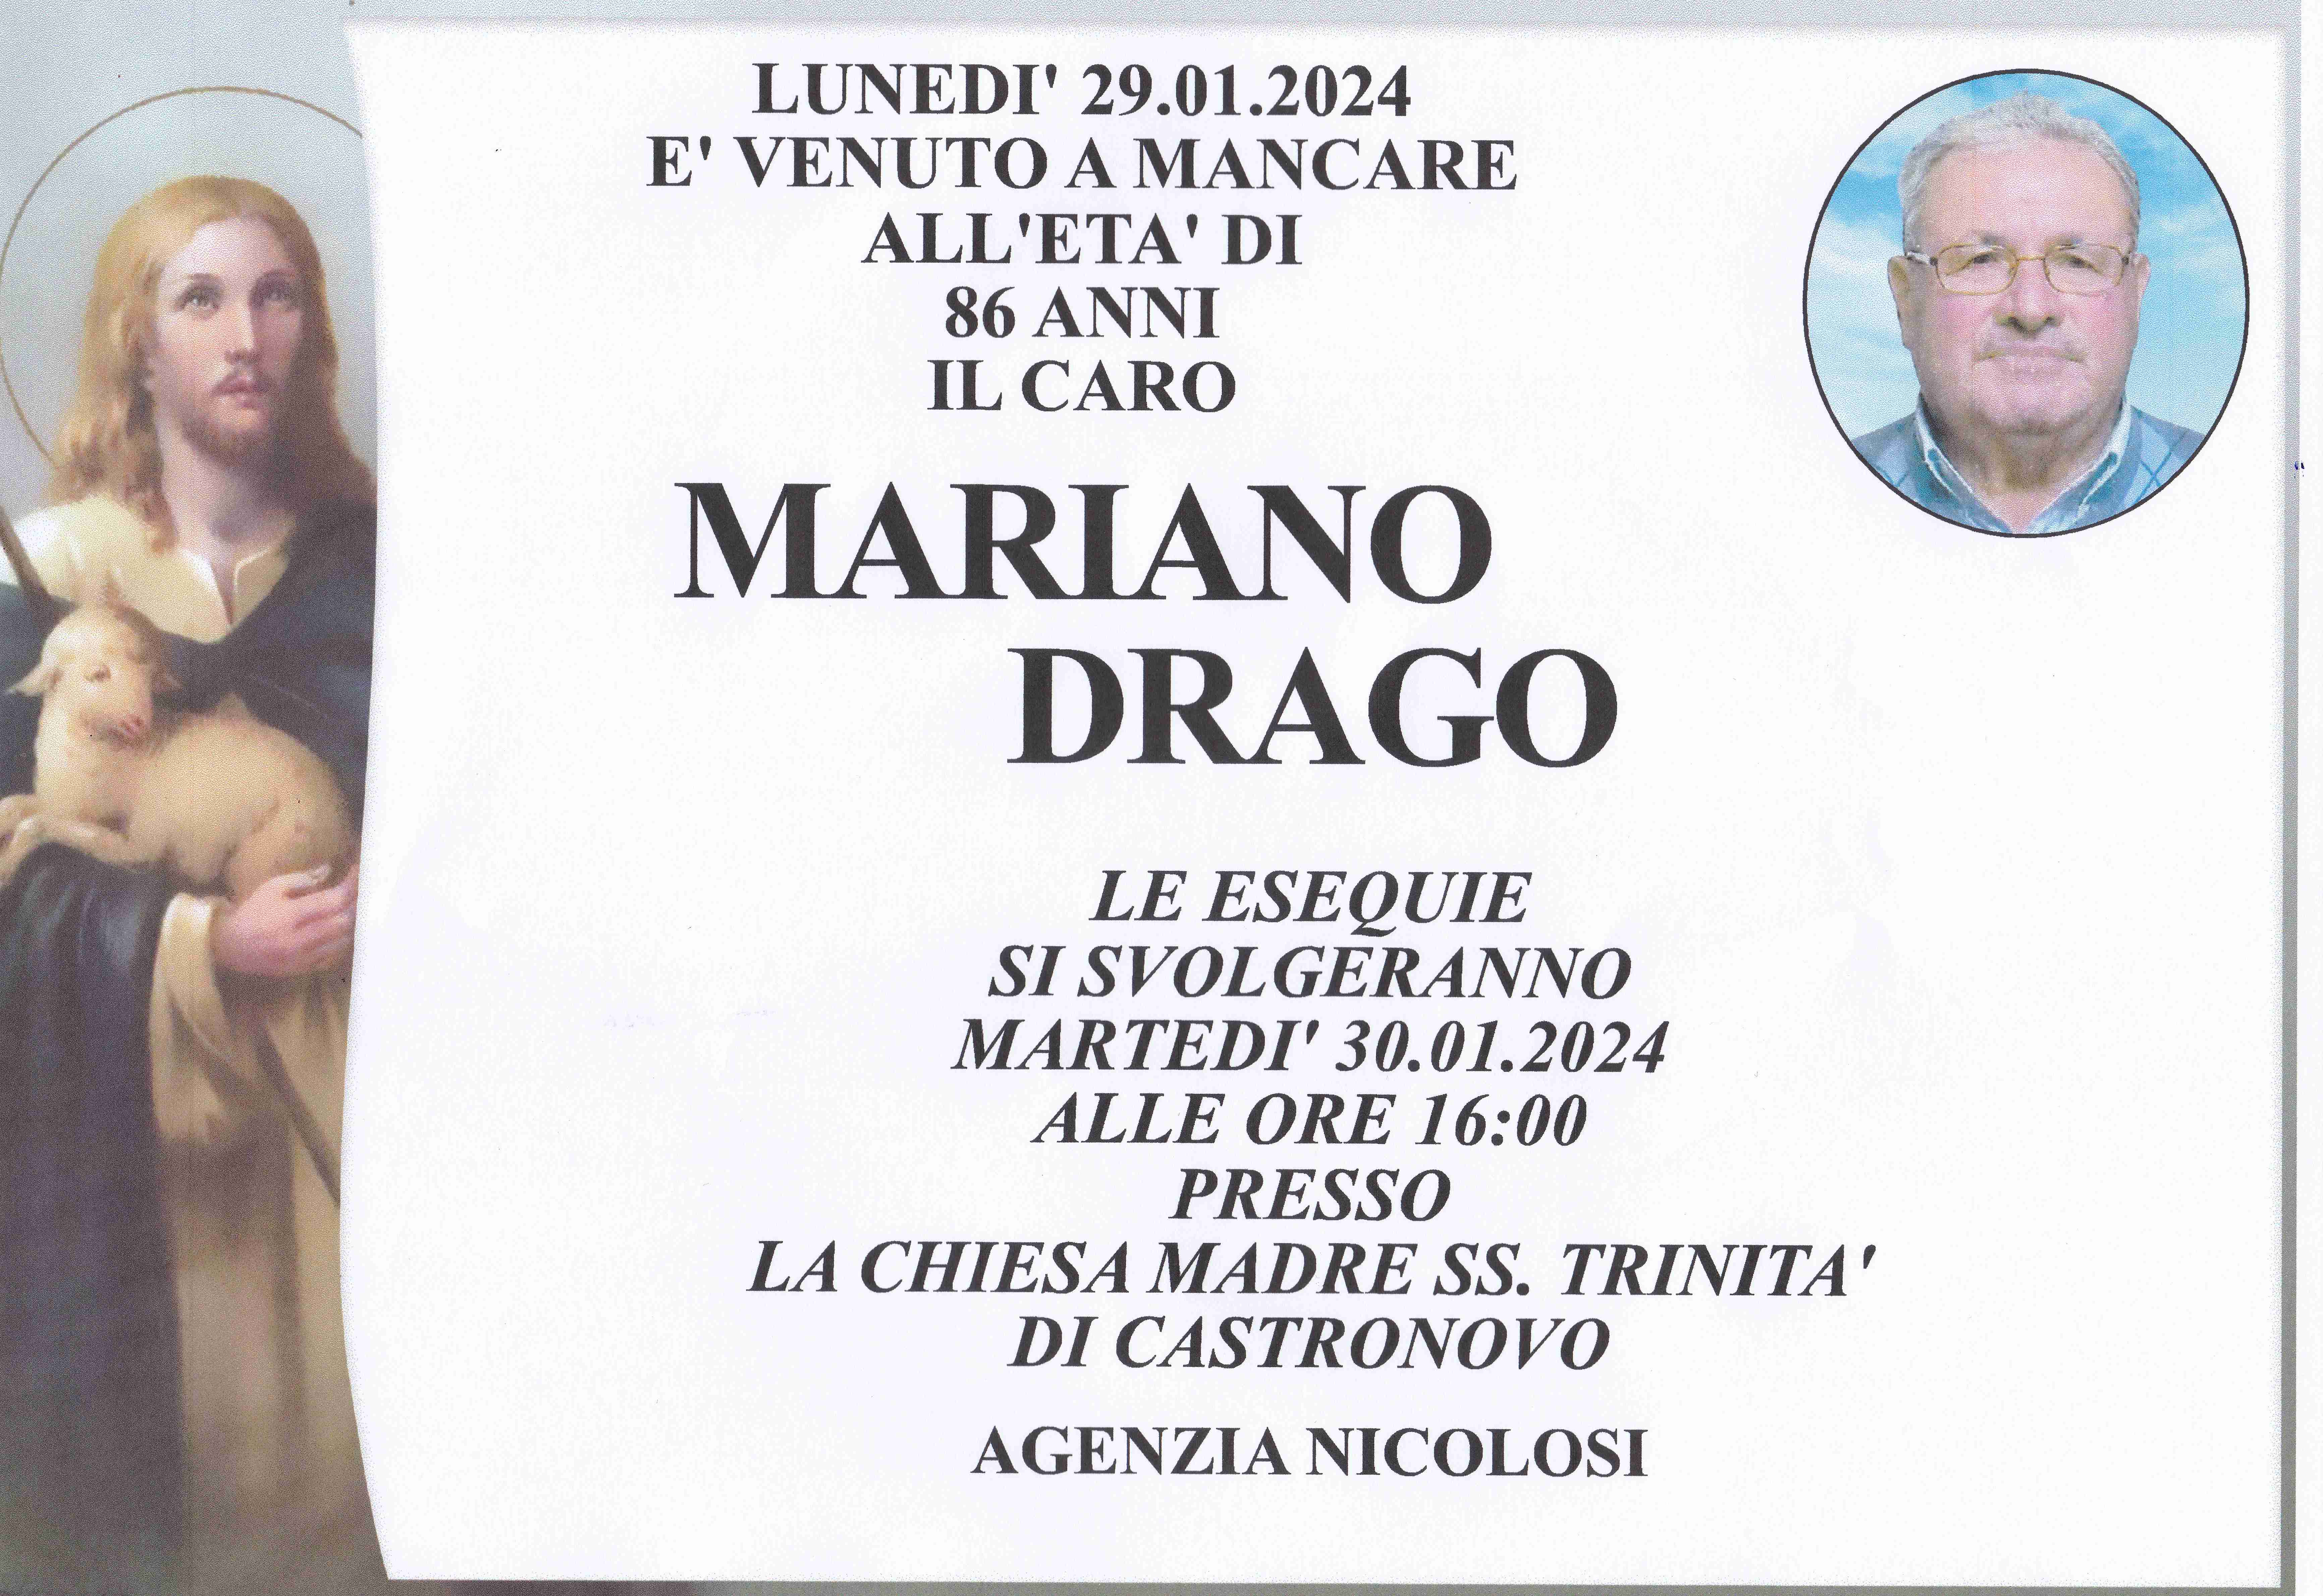 Mariano Drago